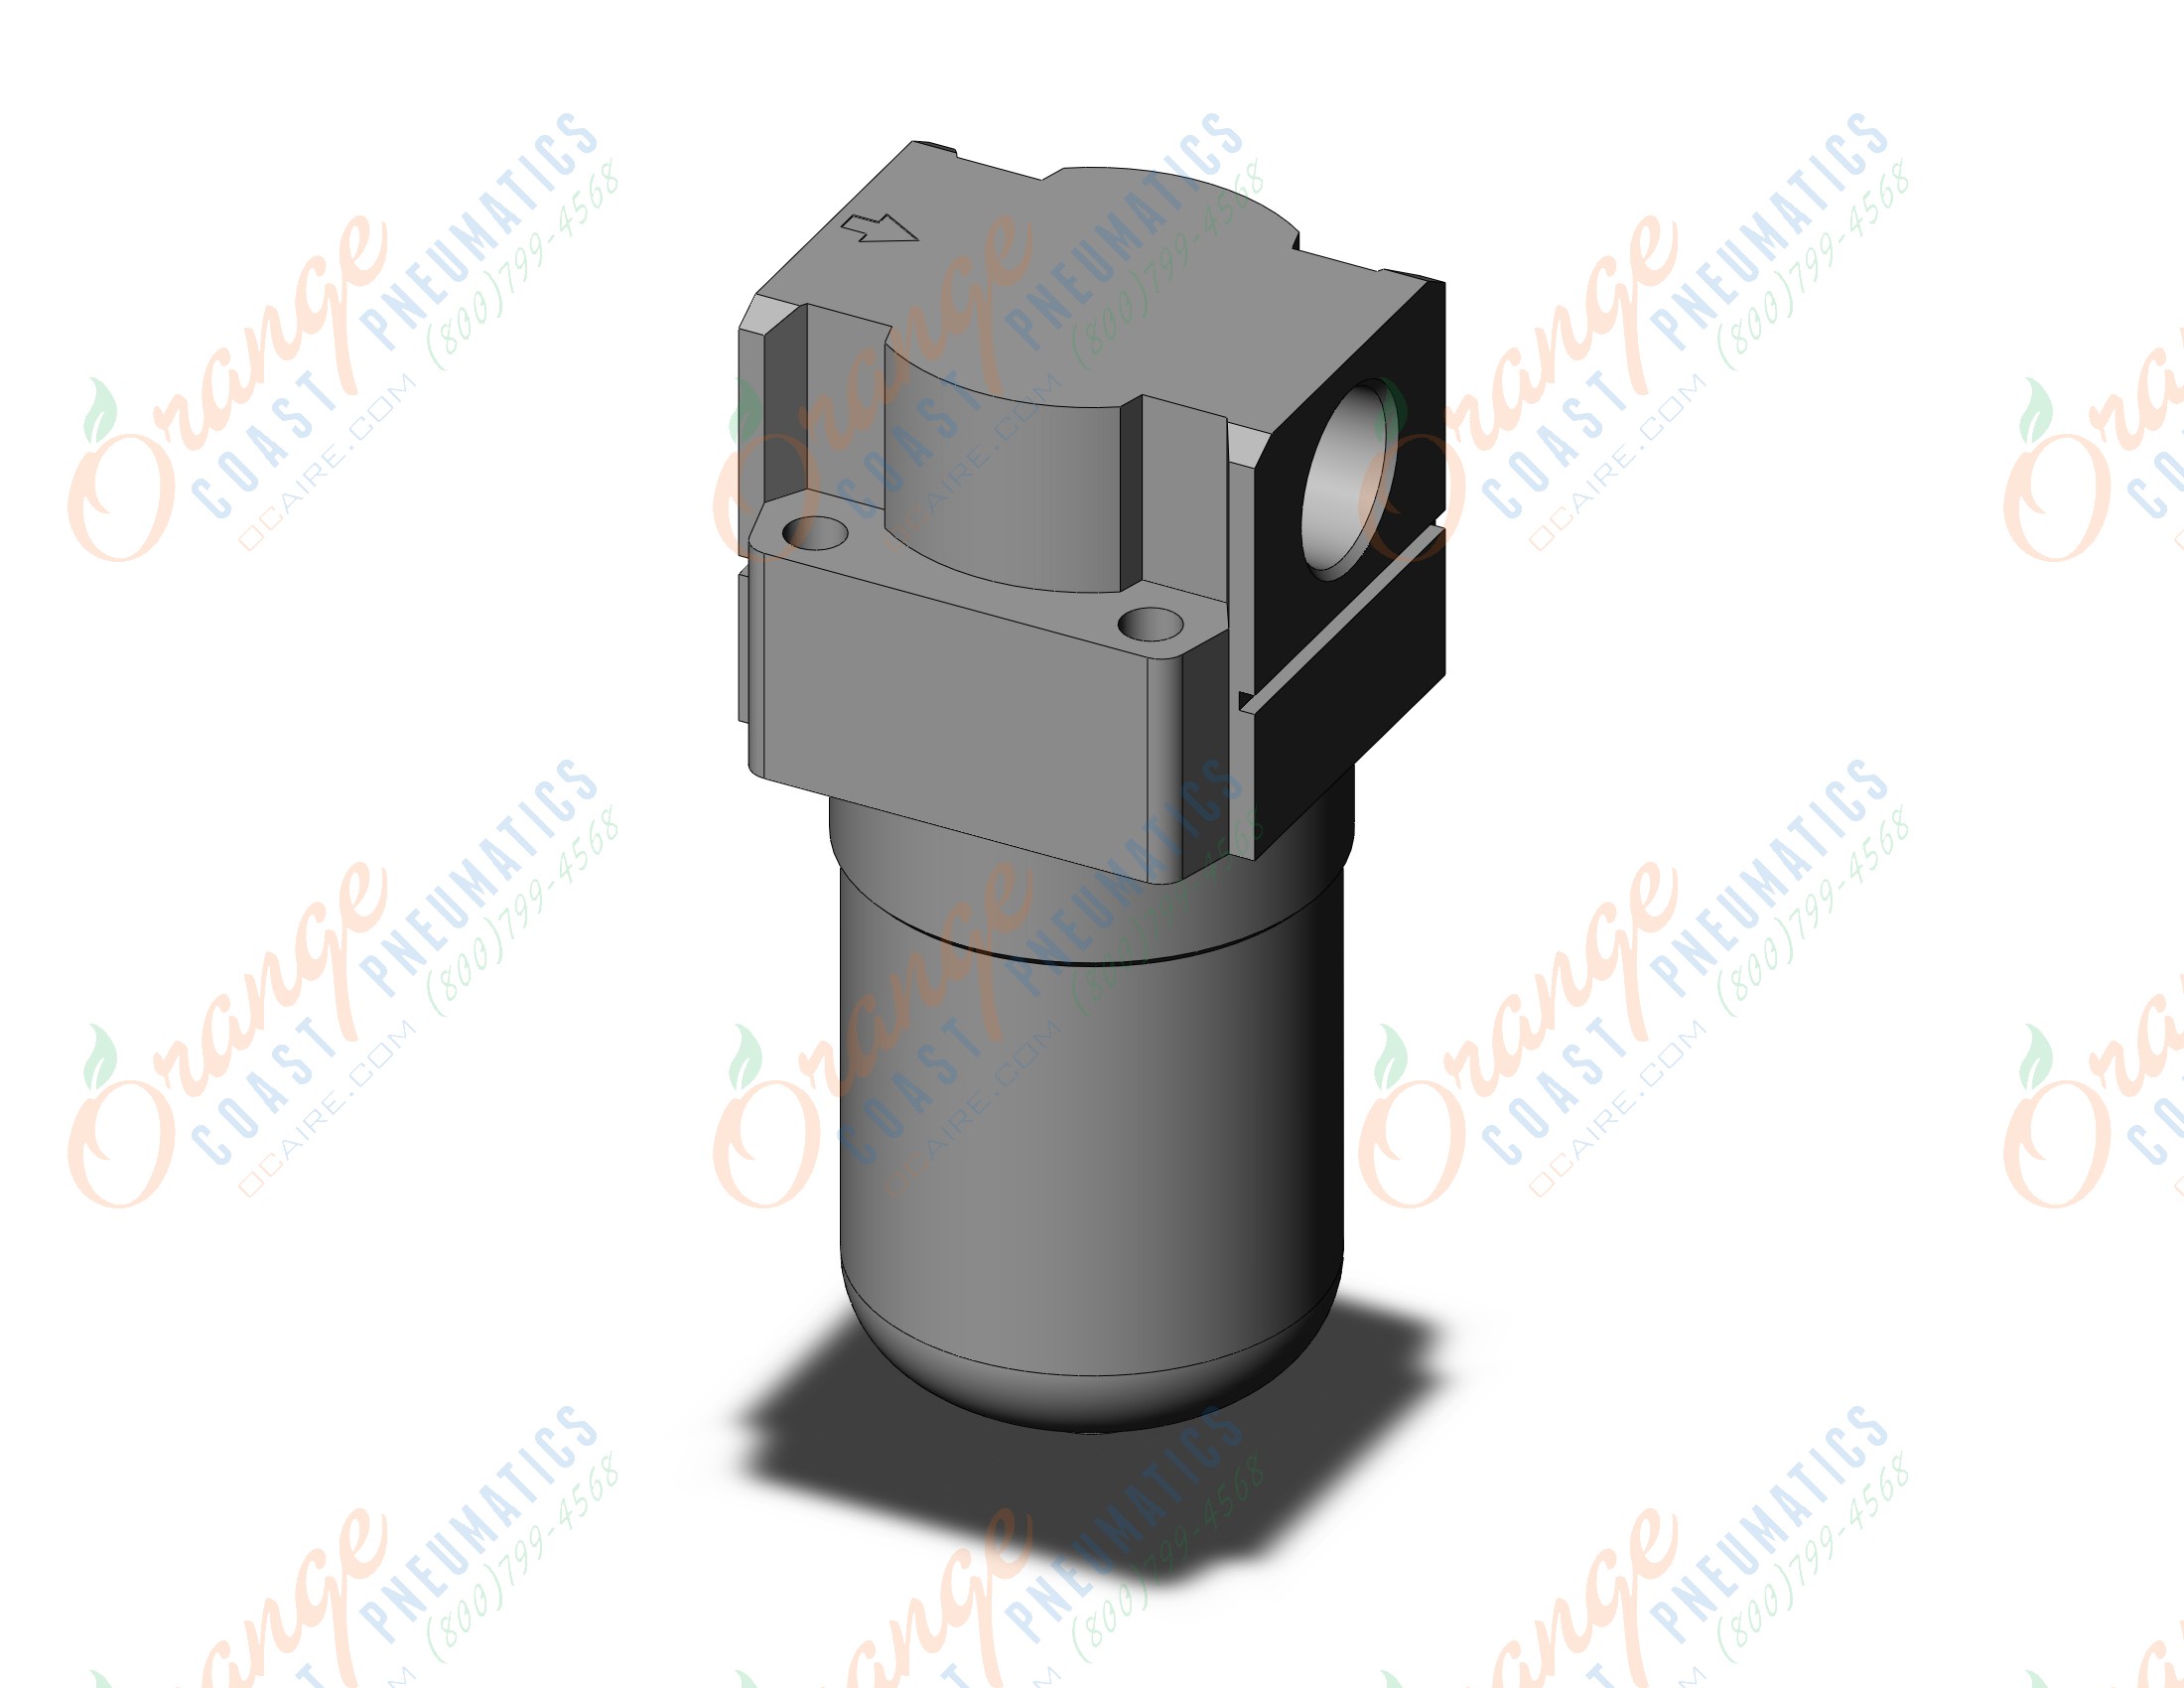 SMC AFJ20-02-5-S-6 vacuum filter, VACUUM FILTER